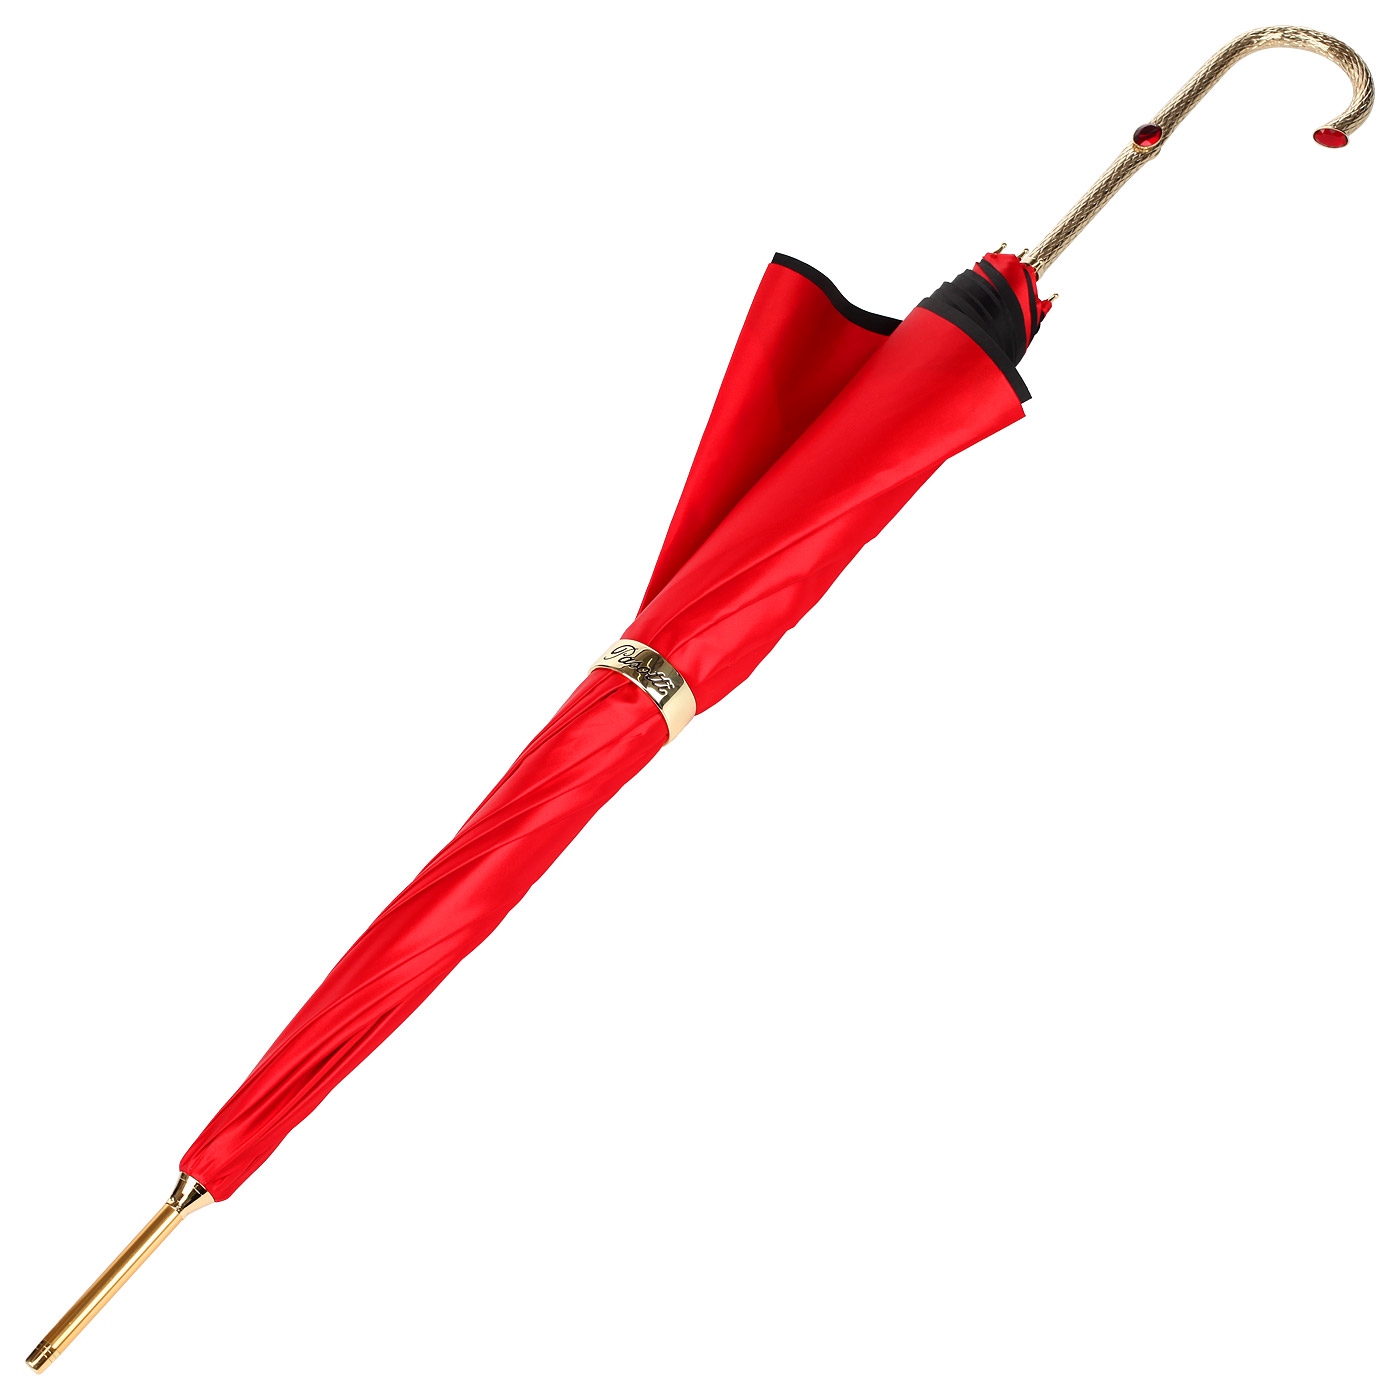 Красный зонт-трость Pasotti 